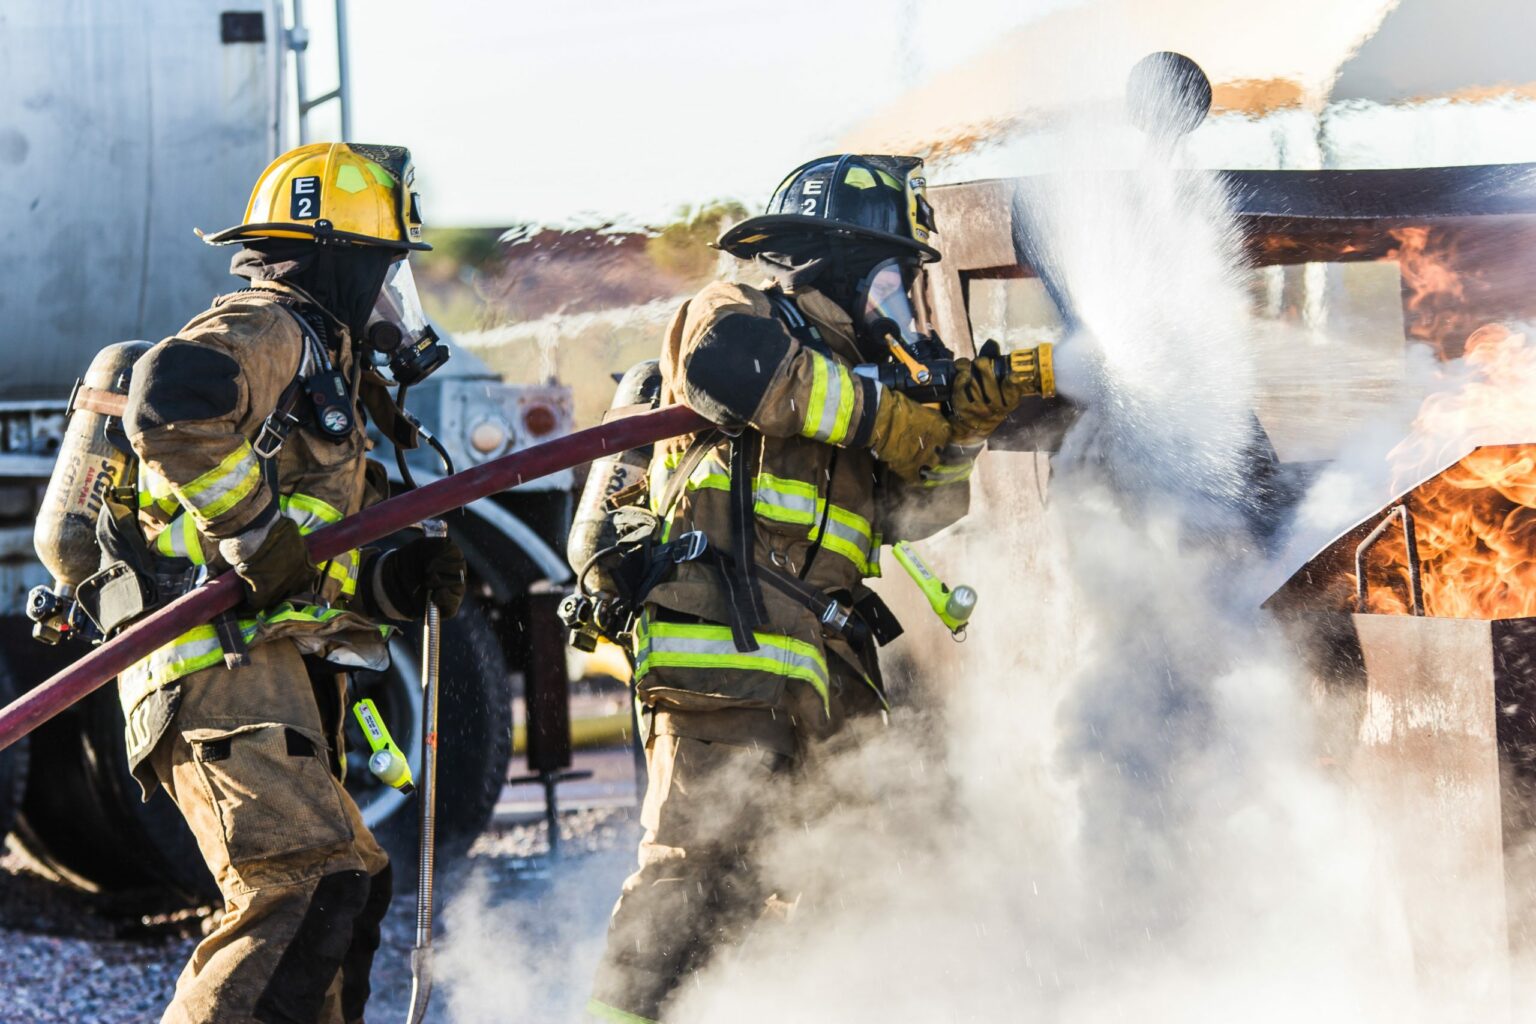 IFSJ firefighter image